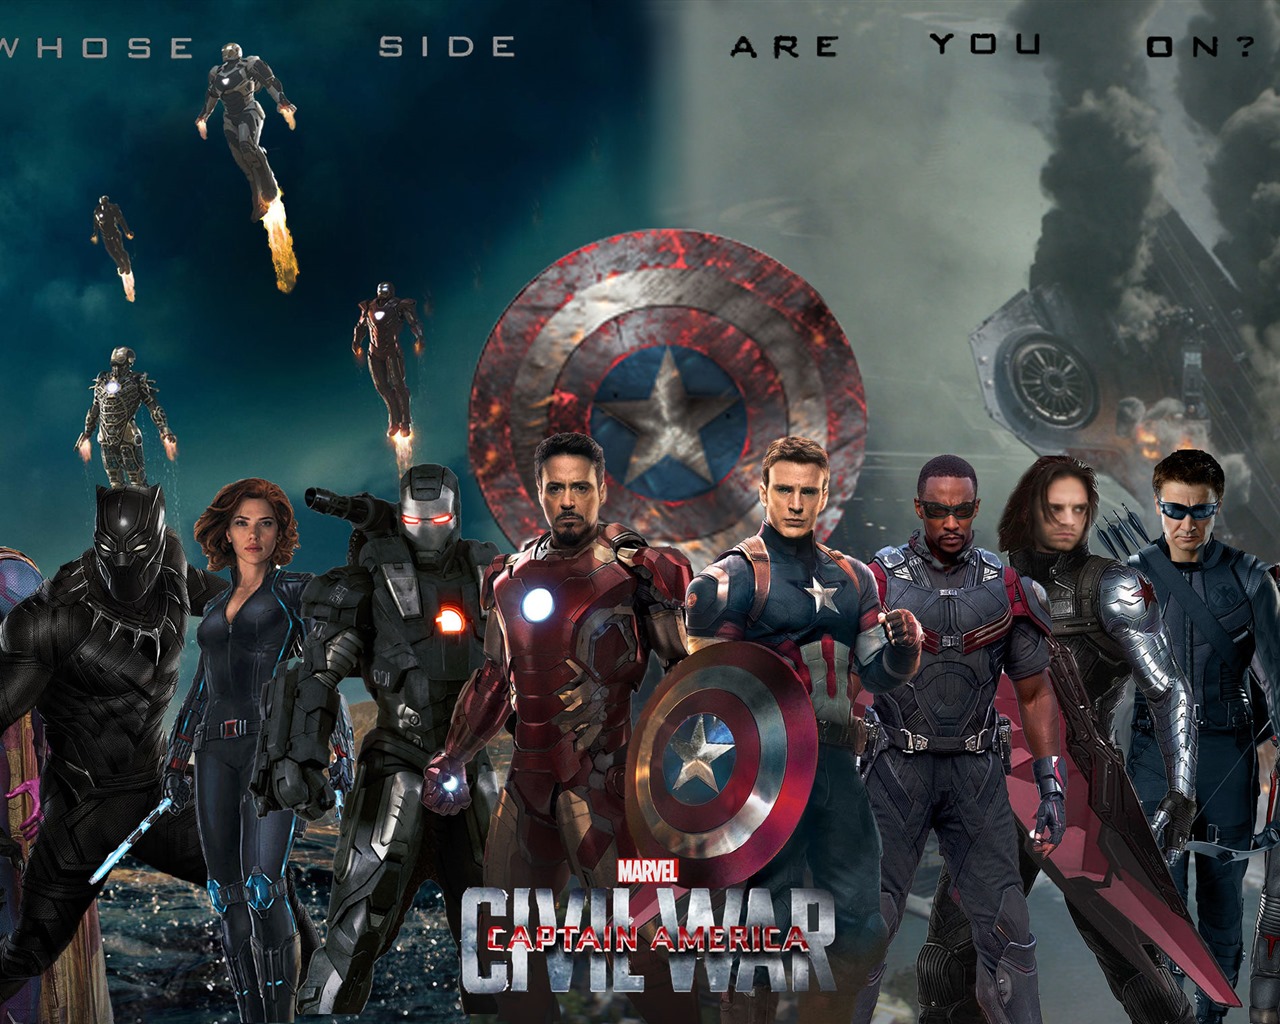 Capitán América: guerra civil, fondos de pantalla de alta definición de películas #11 - 1280x1024